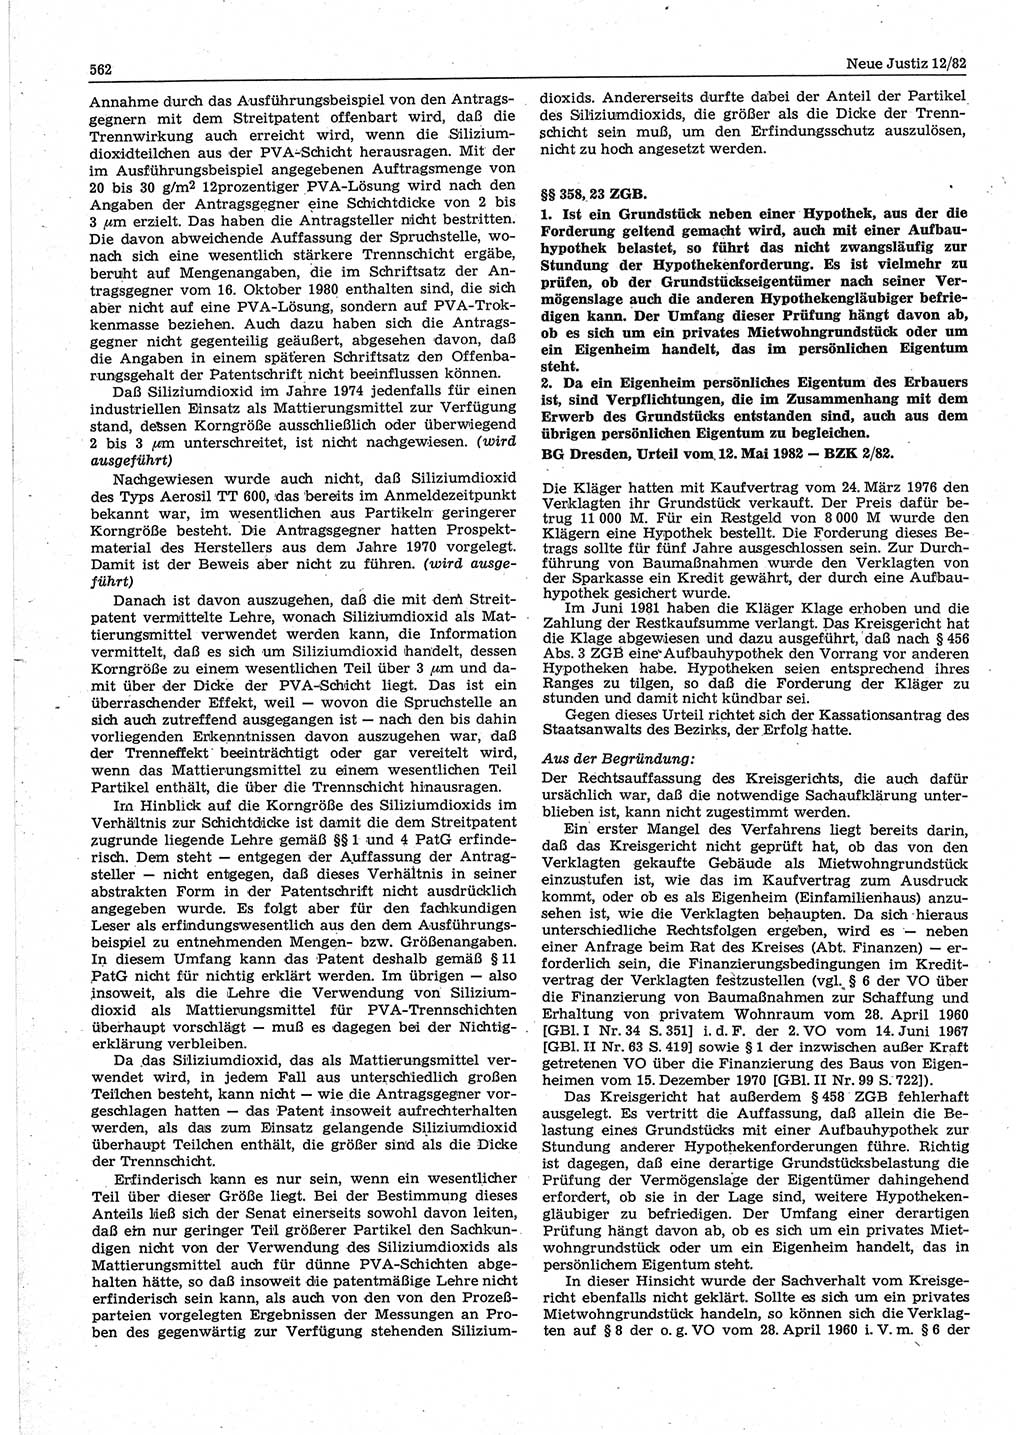 Neue Justiz (NJ), Zeitschrift für sozialistisches Recht und Gesetzlichkeit [Deutsche Demokratische Republik (DDR)], 36. Jahrgang 1982, Seite 562 (NJ DDR 1982, S. 562)